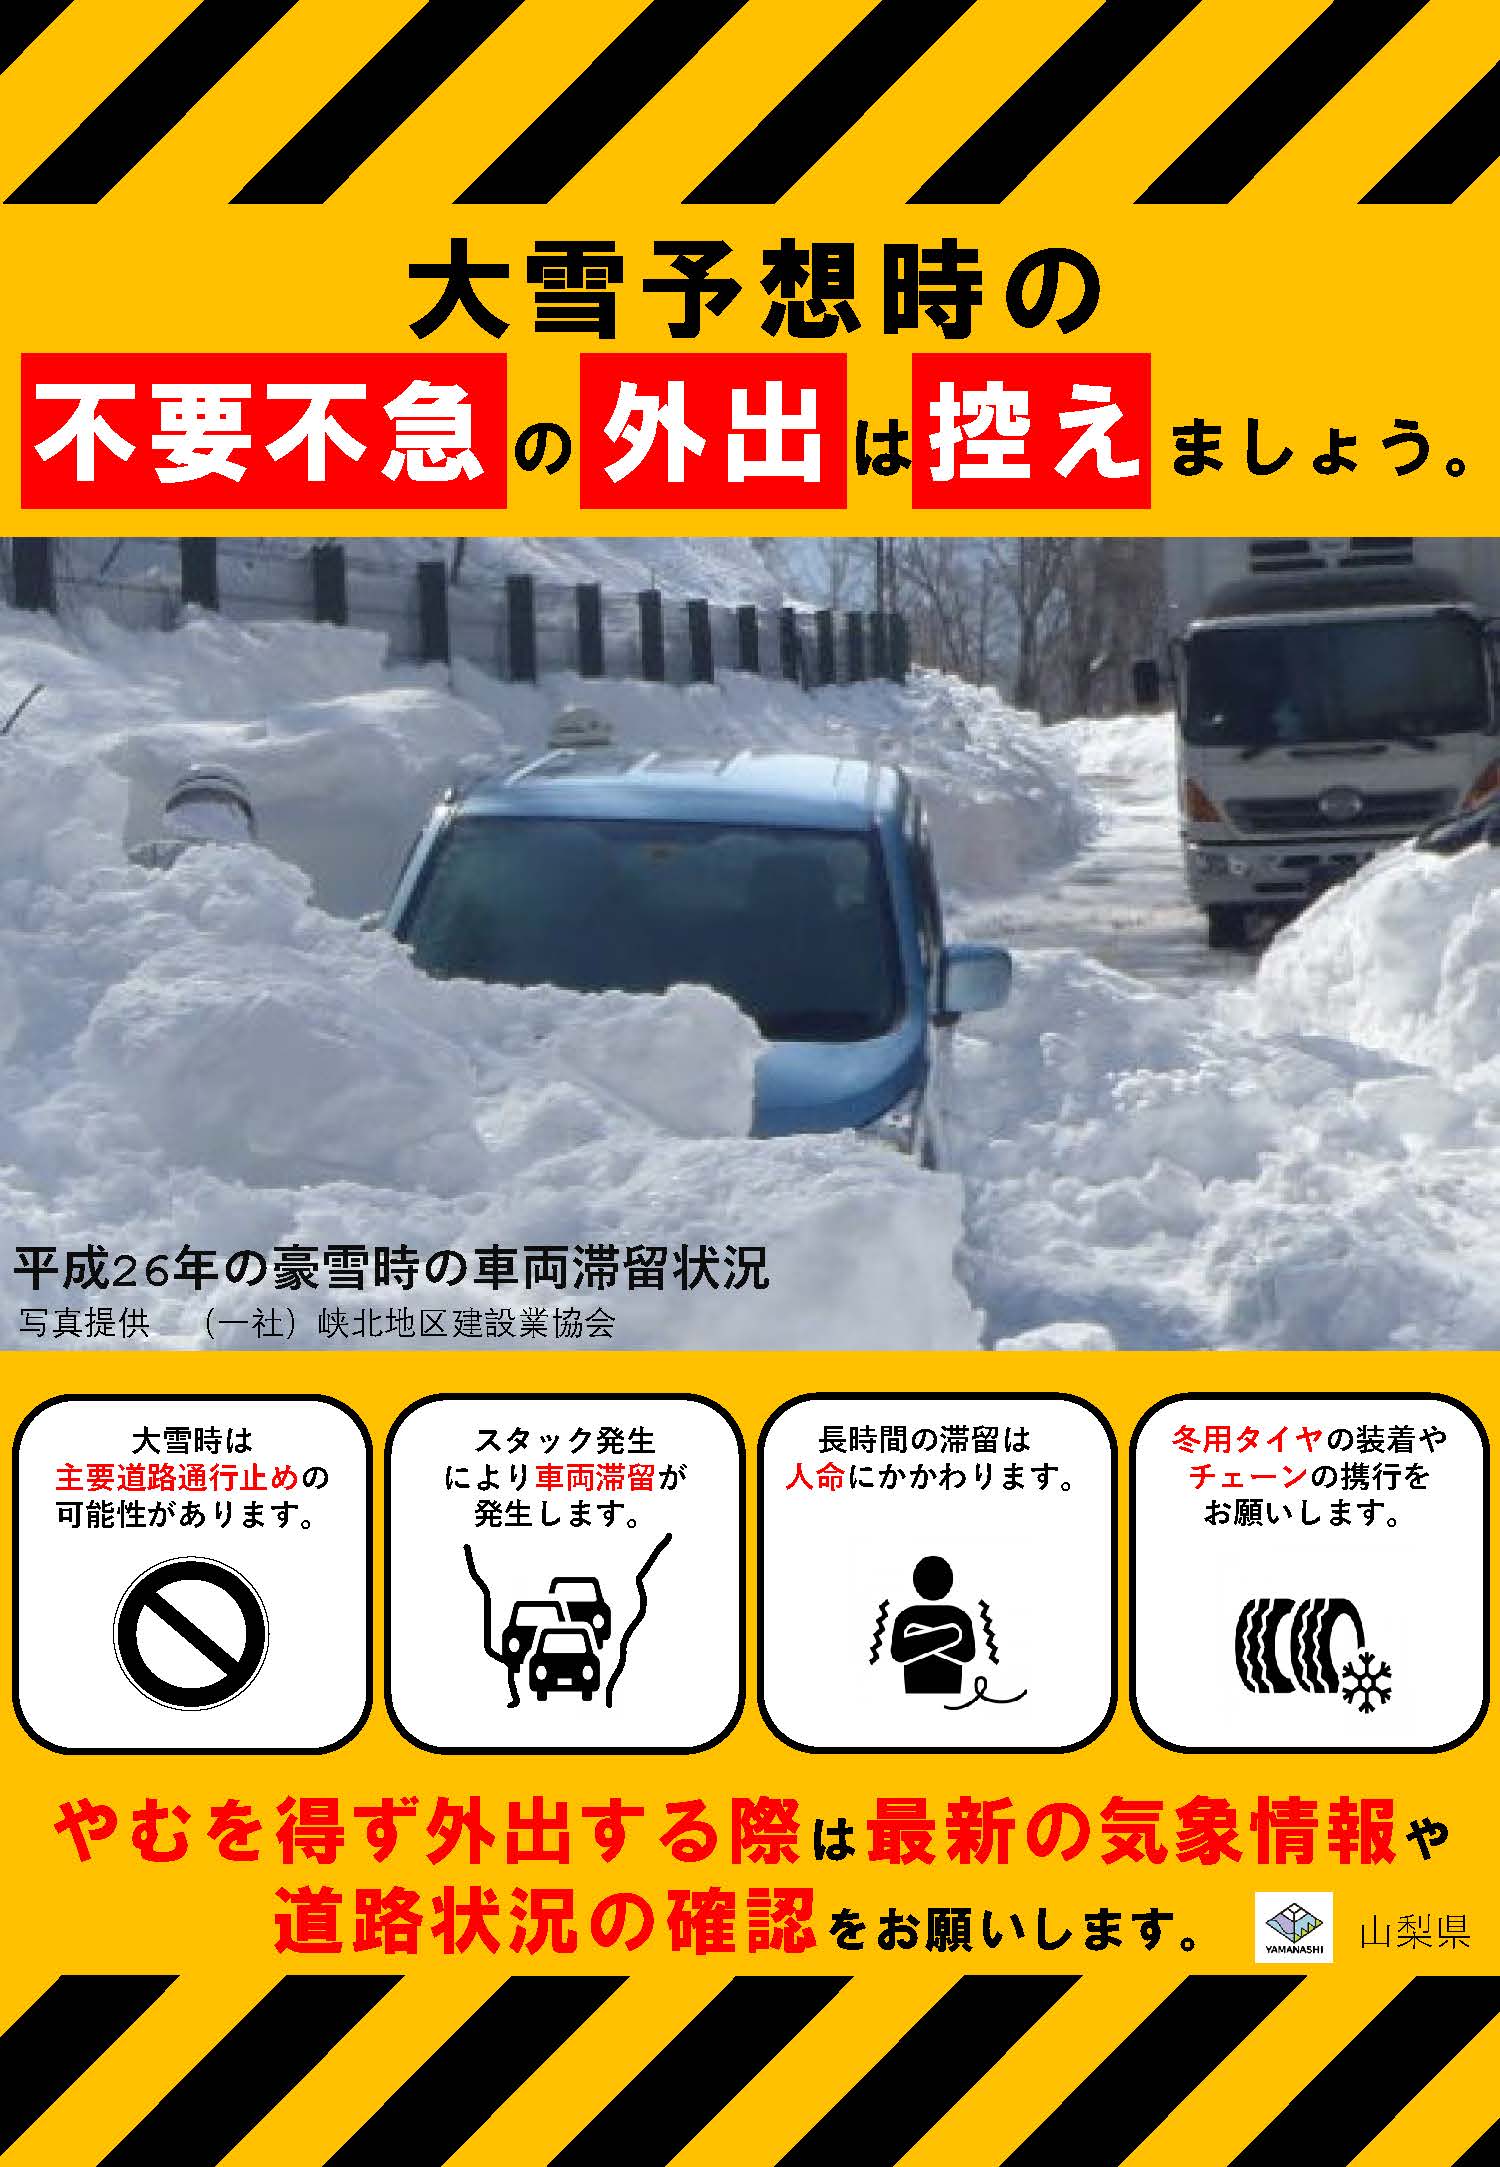 大雪予想時の道路利用について（お願い）